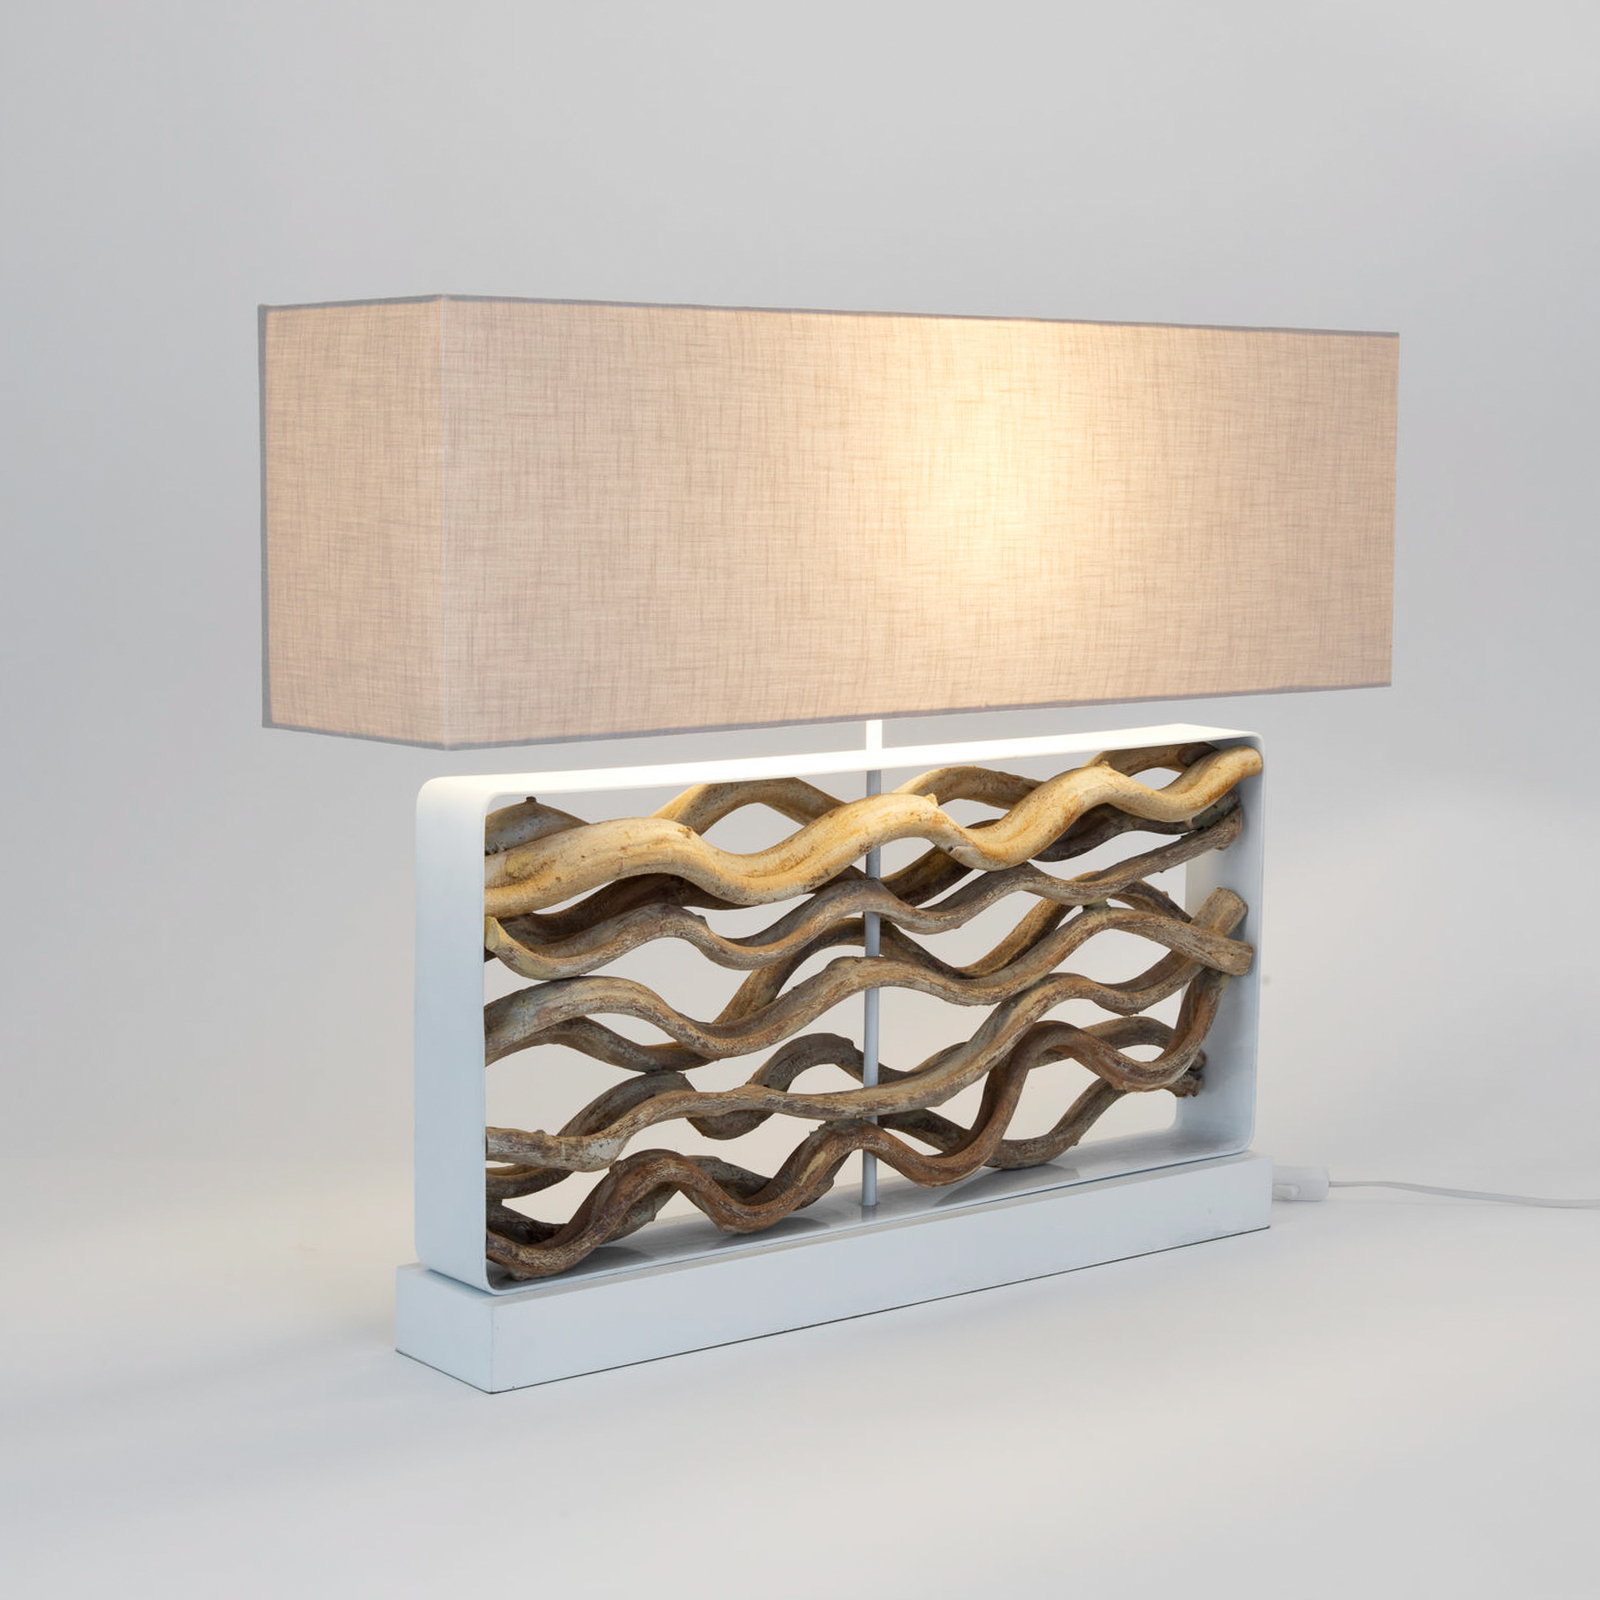 Tremiti bordslampa, träfärgad/beige, höjd 67 cm, trä